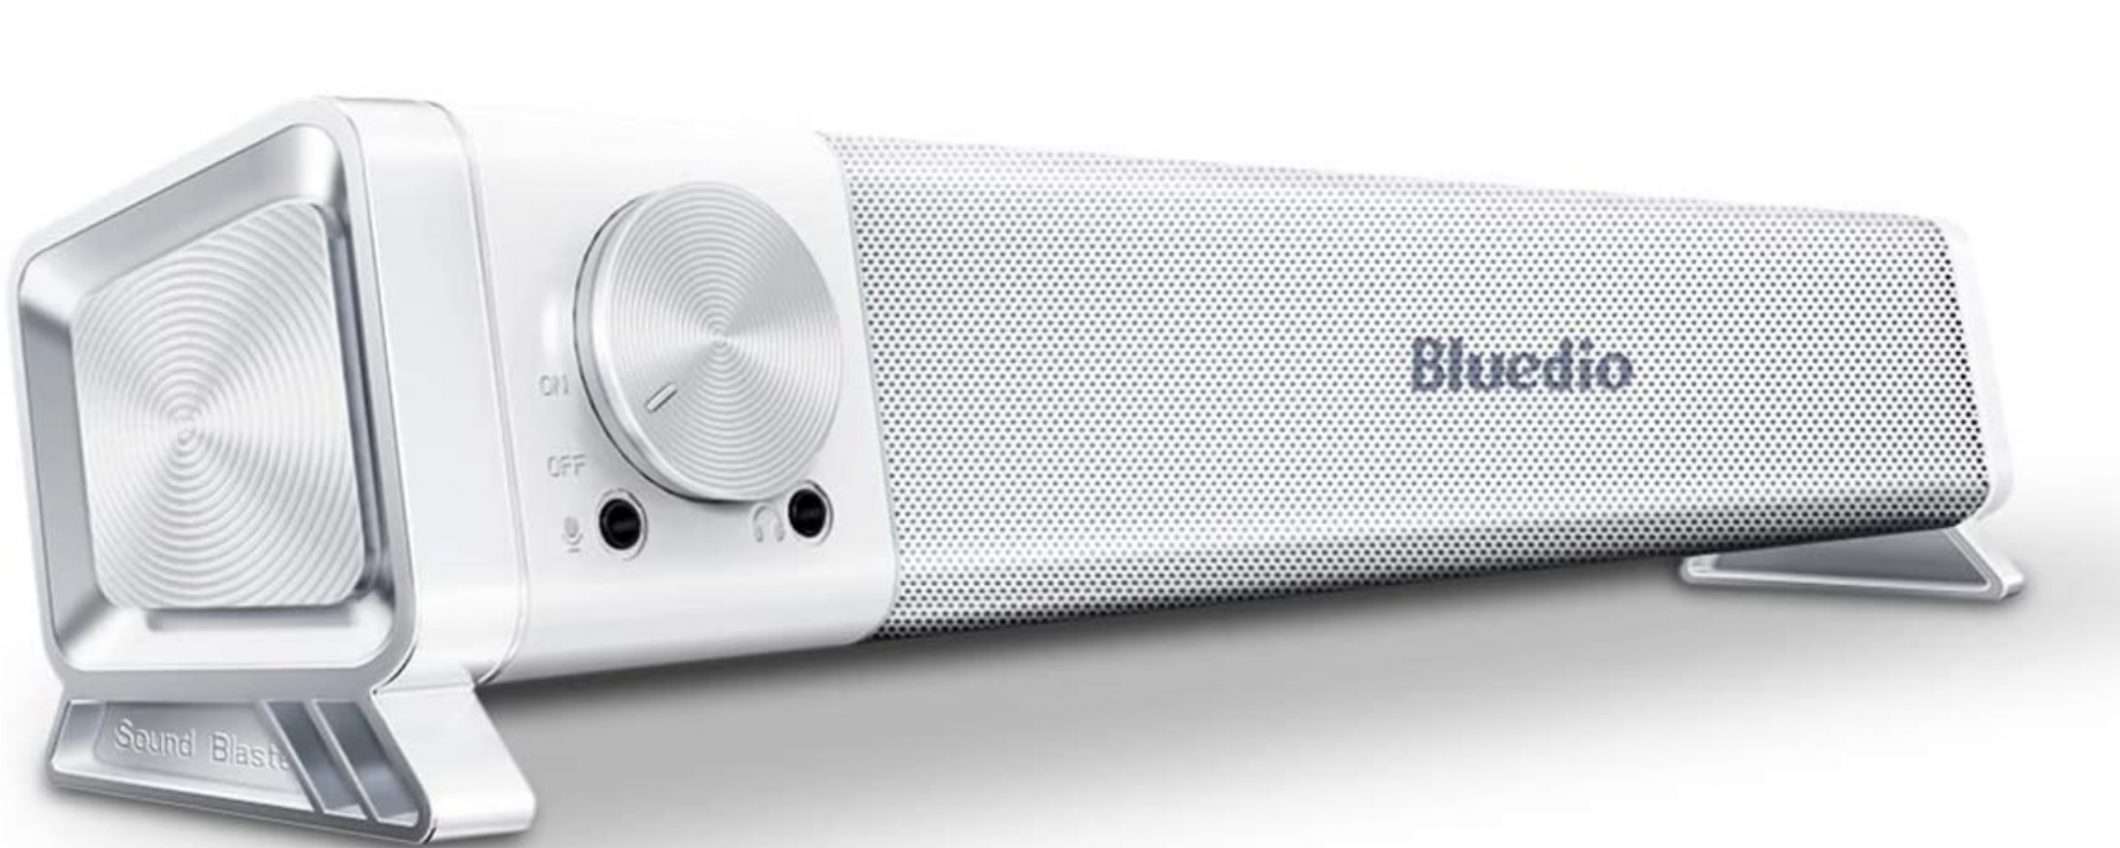 Bomba assoluta: cuffie Bluetooth TWS in regalo con la soundbar Bluedio